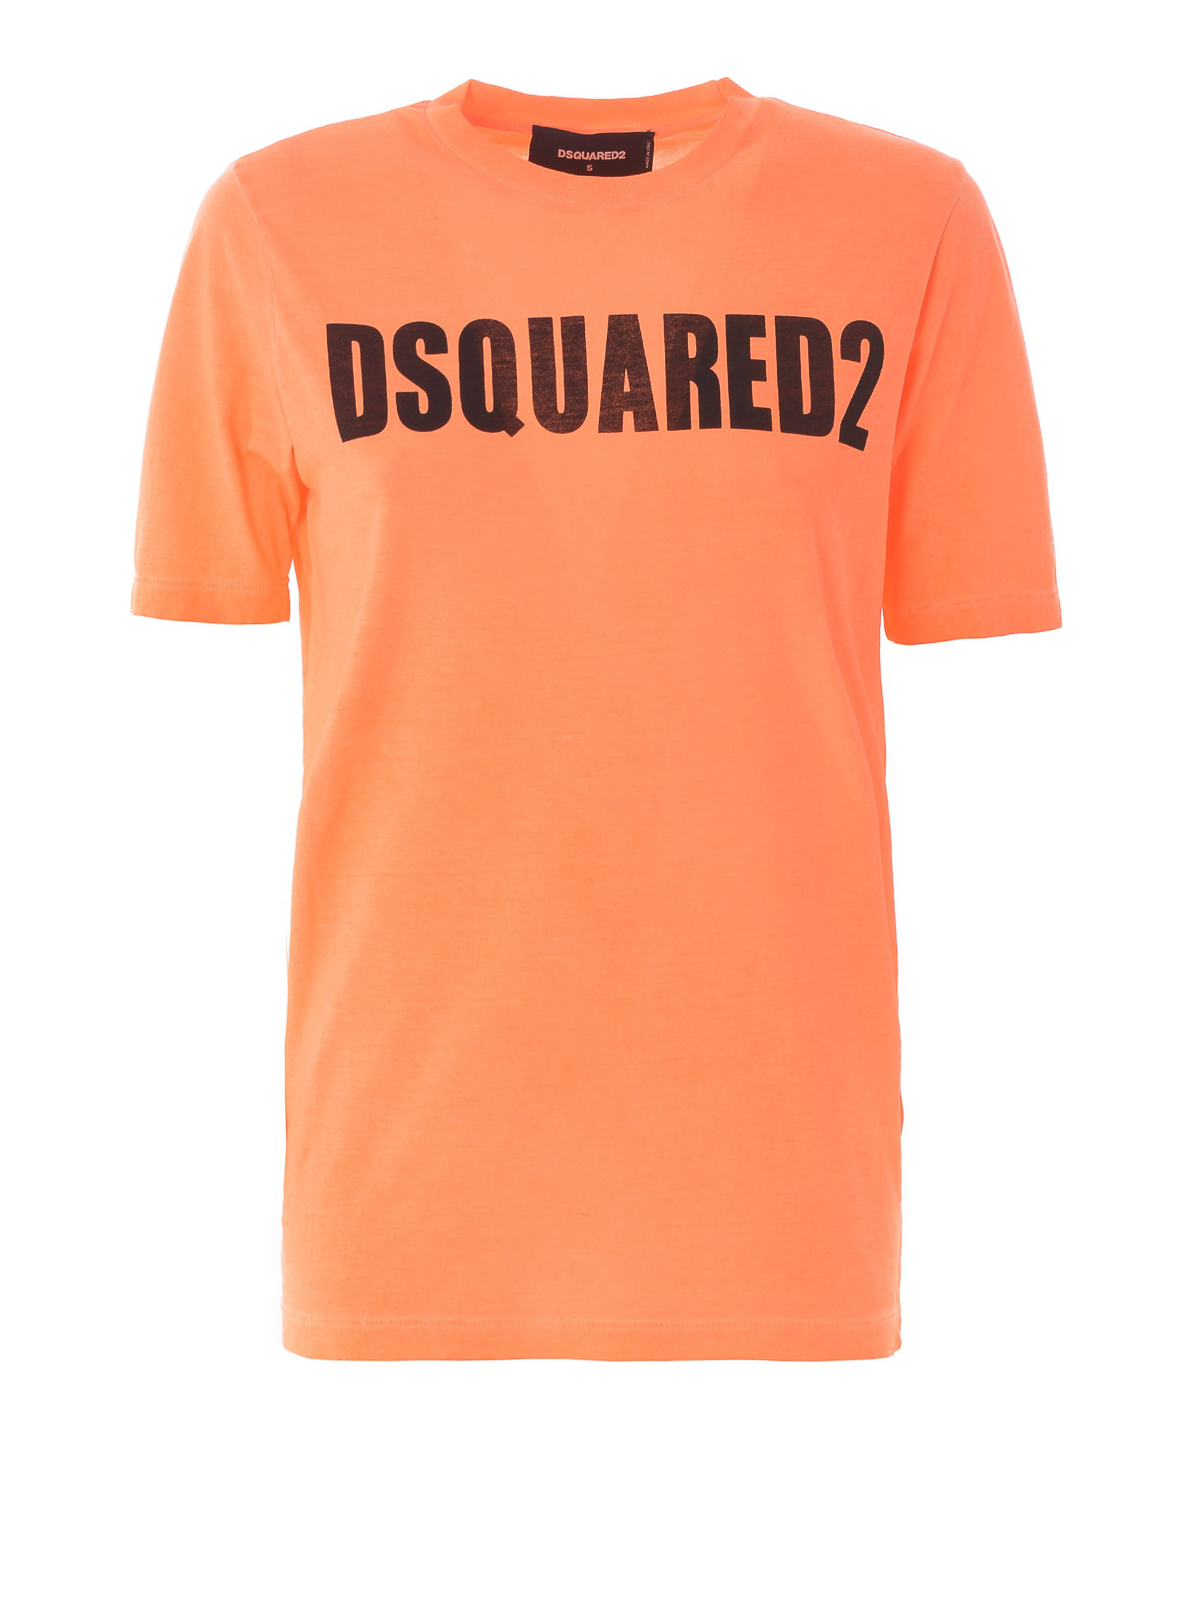 orange dsquared2 top